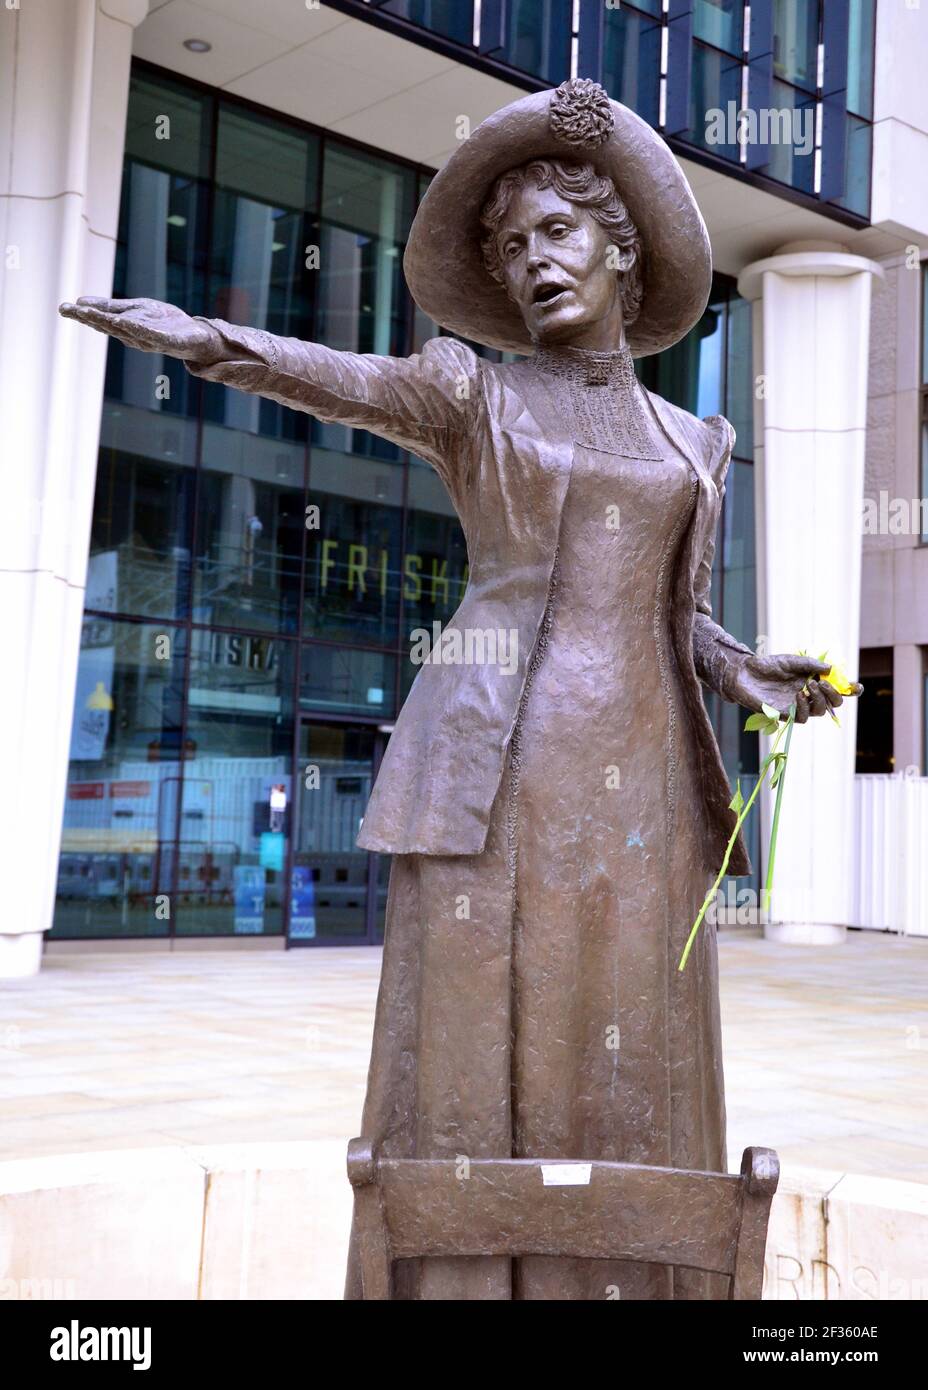 La statue d'Emmeline Pankhurst sur la place Saint-Pierre, Manchester, Angleterre, Royaume-Uni, tient une fleur laissée après la vigile à la mémoire de Sarah Everard le 13 mars 2021. Un policier de la région métropolitaine de Londres a été inculpé d'enlèvement et de meurtre de Sarah Everard le 12 mars. Il a comparu devant le tribunal des magistrats de Westminster le 13 mars et a été remis en garde à vue pour comparaître devant le tribunal Old Bailey le 16 mars. Emmeline Pankhurst était le chef du mouvement des suffragettes au Royaume-Uni. La statue de bronze a été sculptée par Hazel Reeves. Banque D'Images